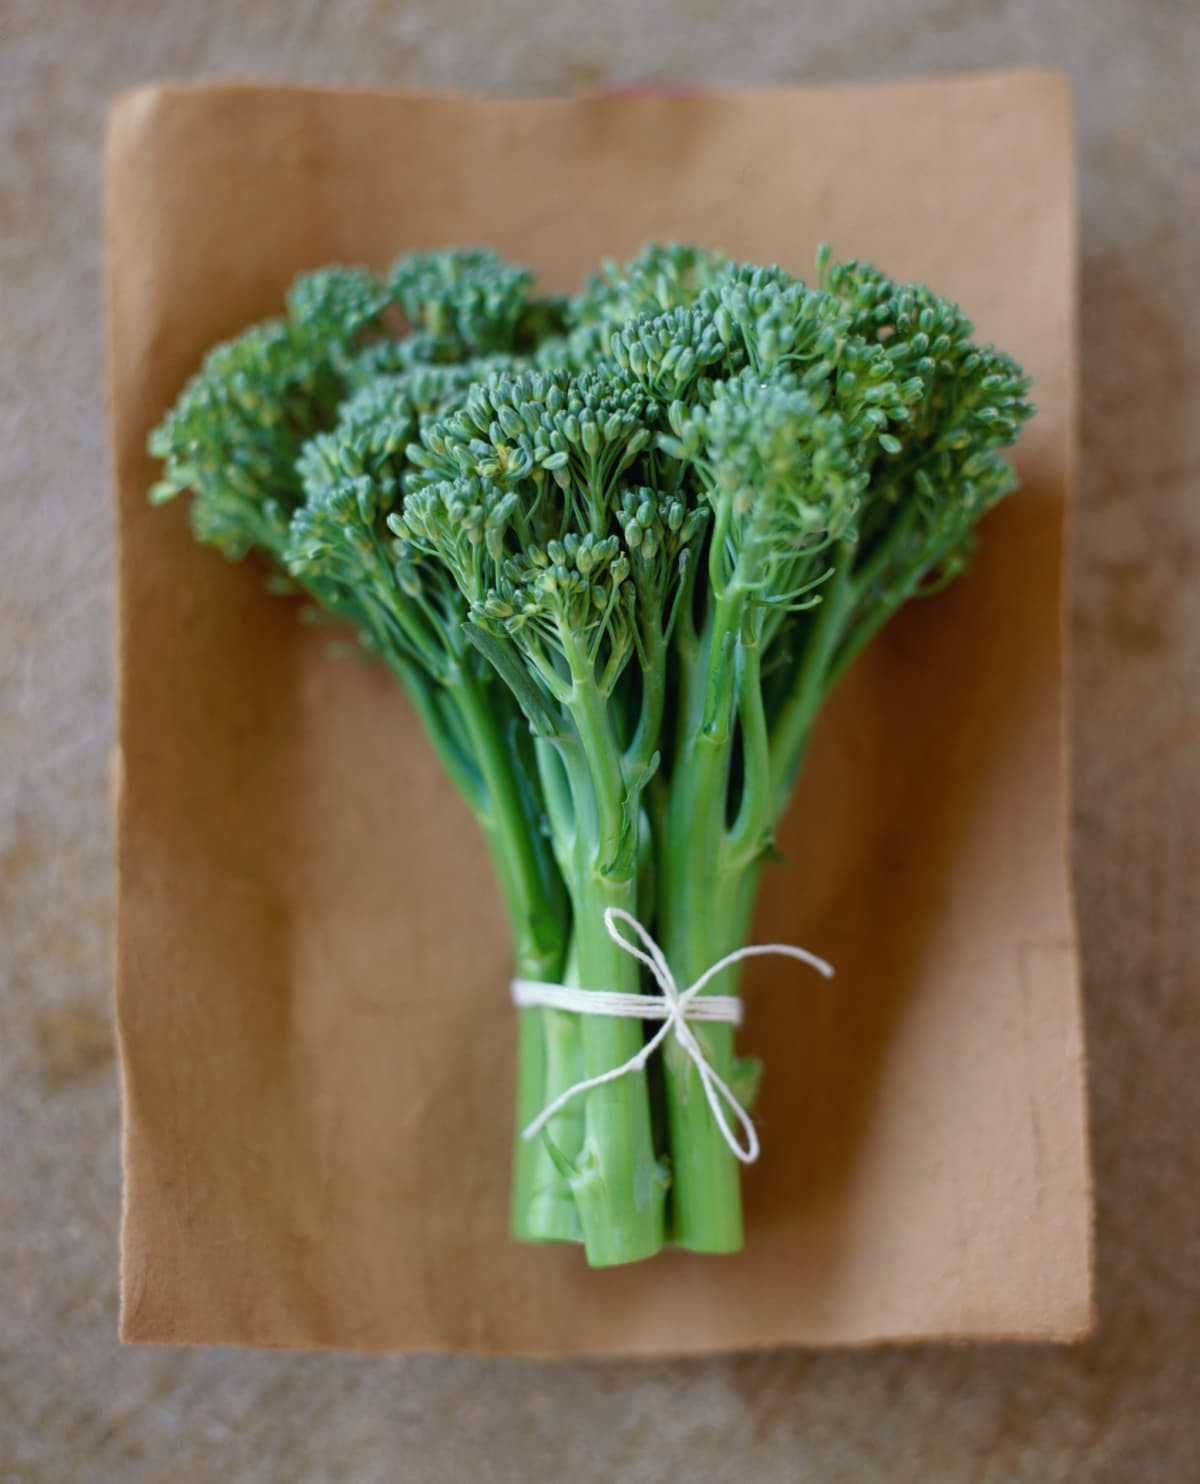 Broccoli rabe (rapini)